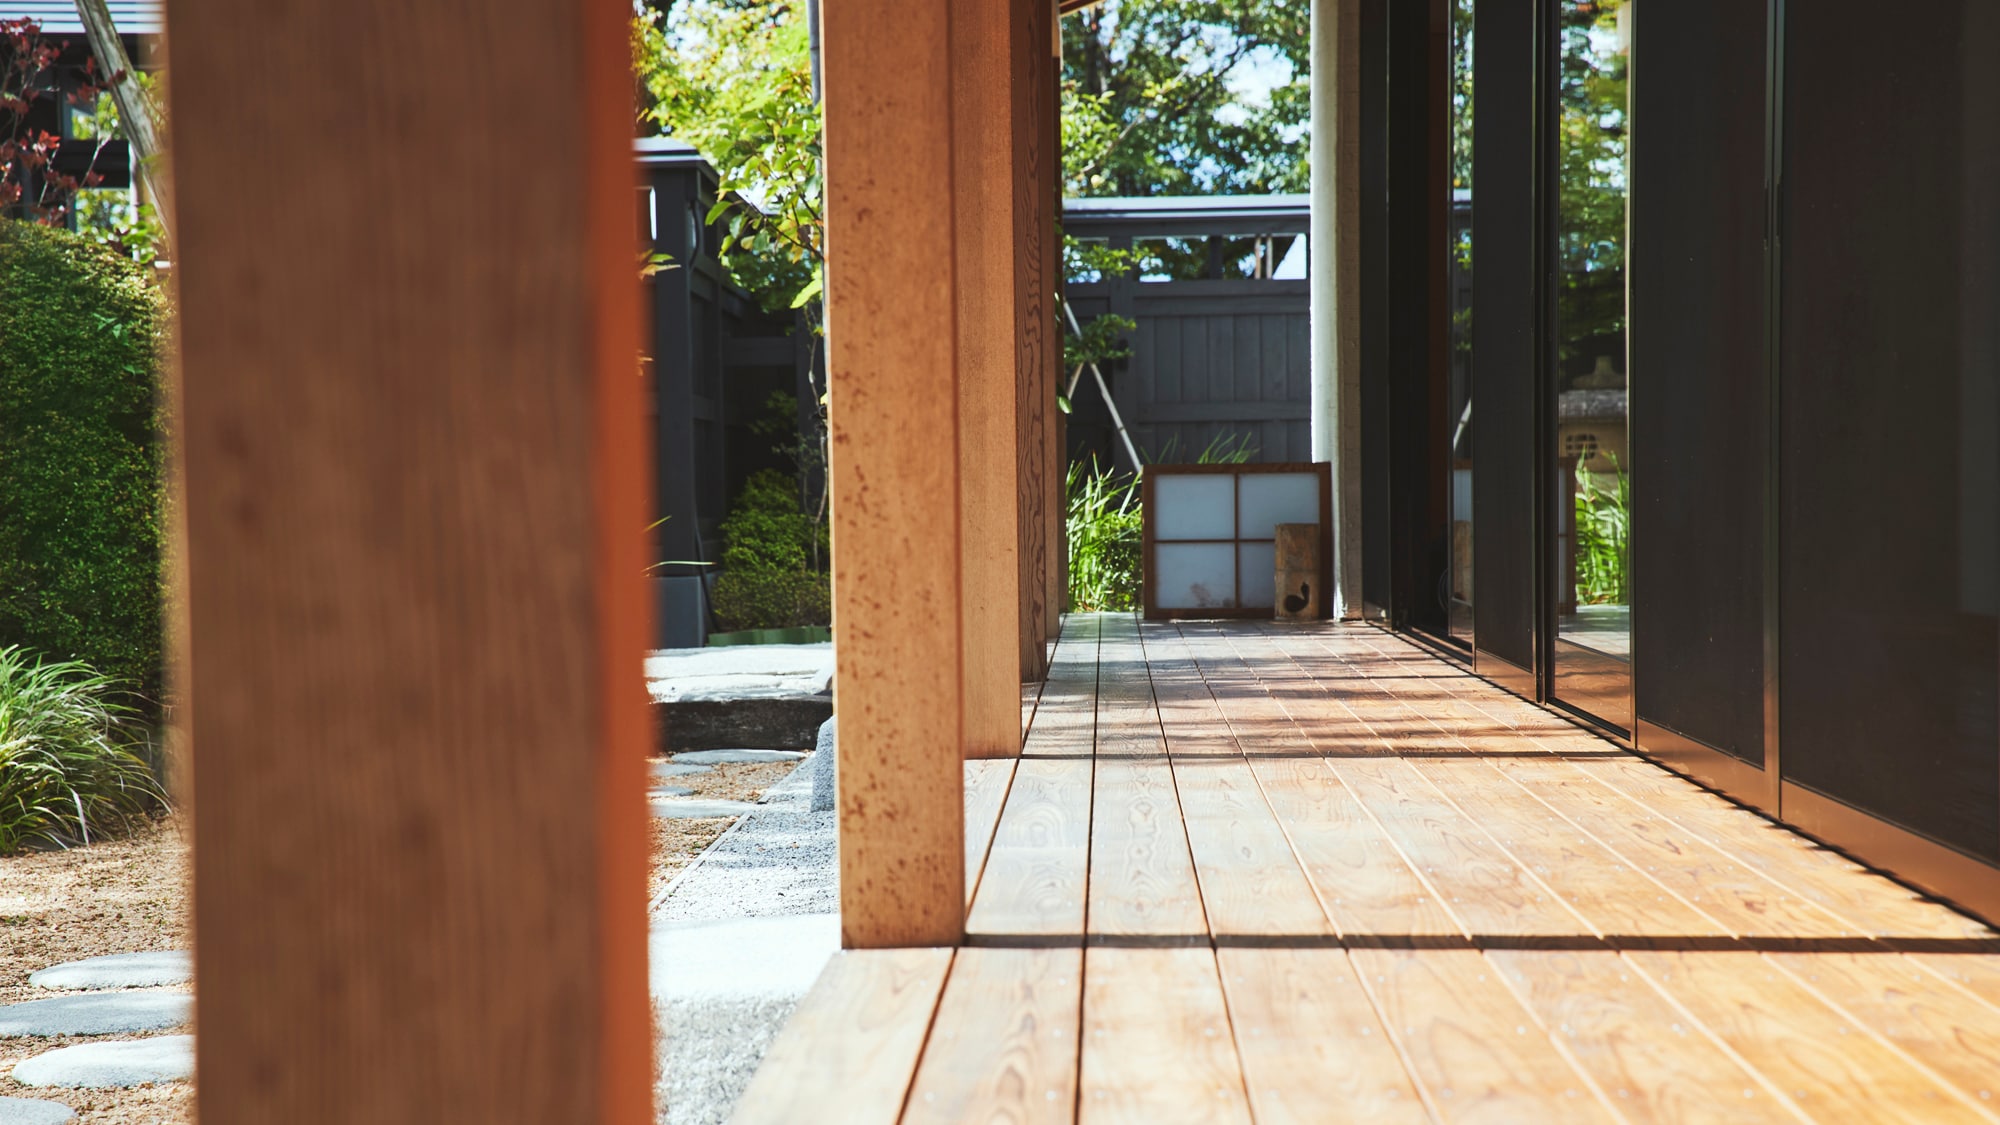 [Irori Tea Room] The veranda overlooking the Japanese garden